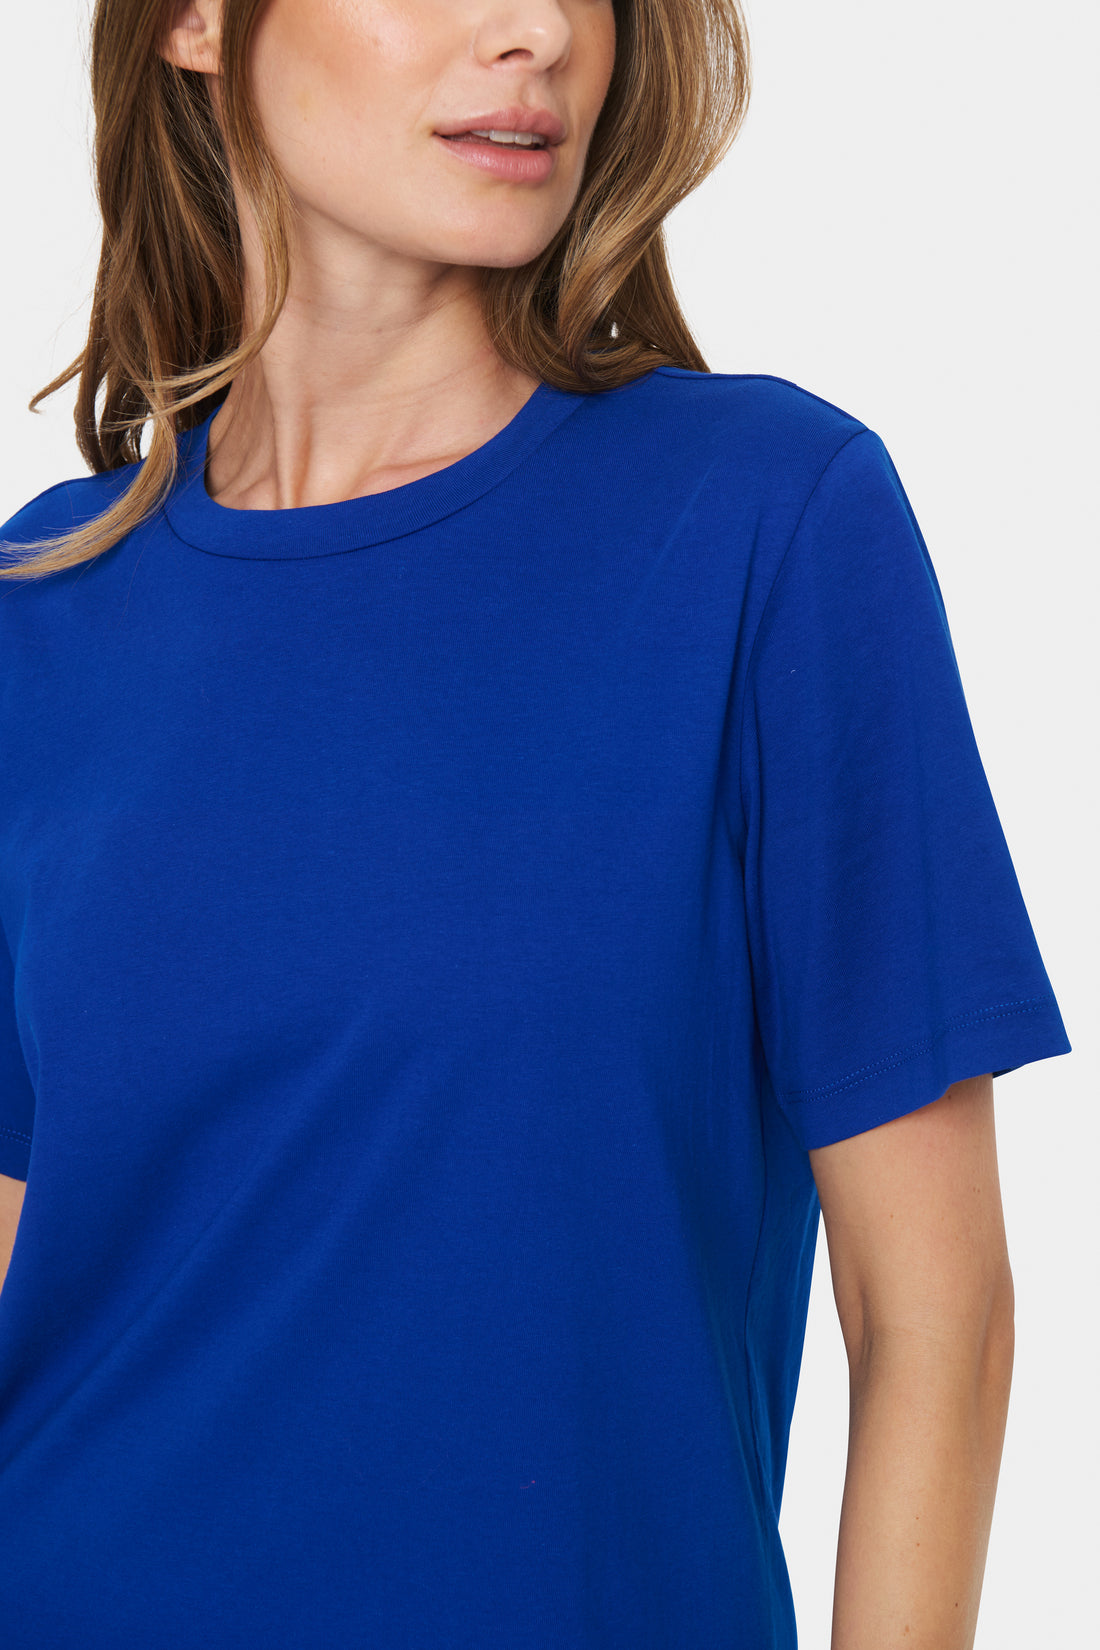 Saint Tropez Faria Cotton T-Shirt in Surf Blue